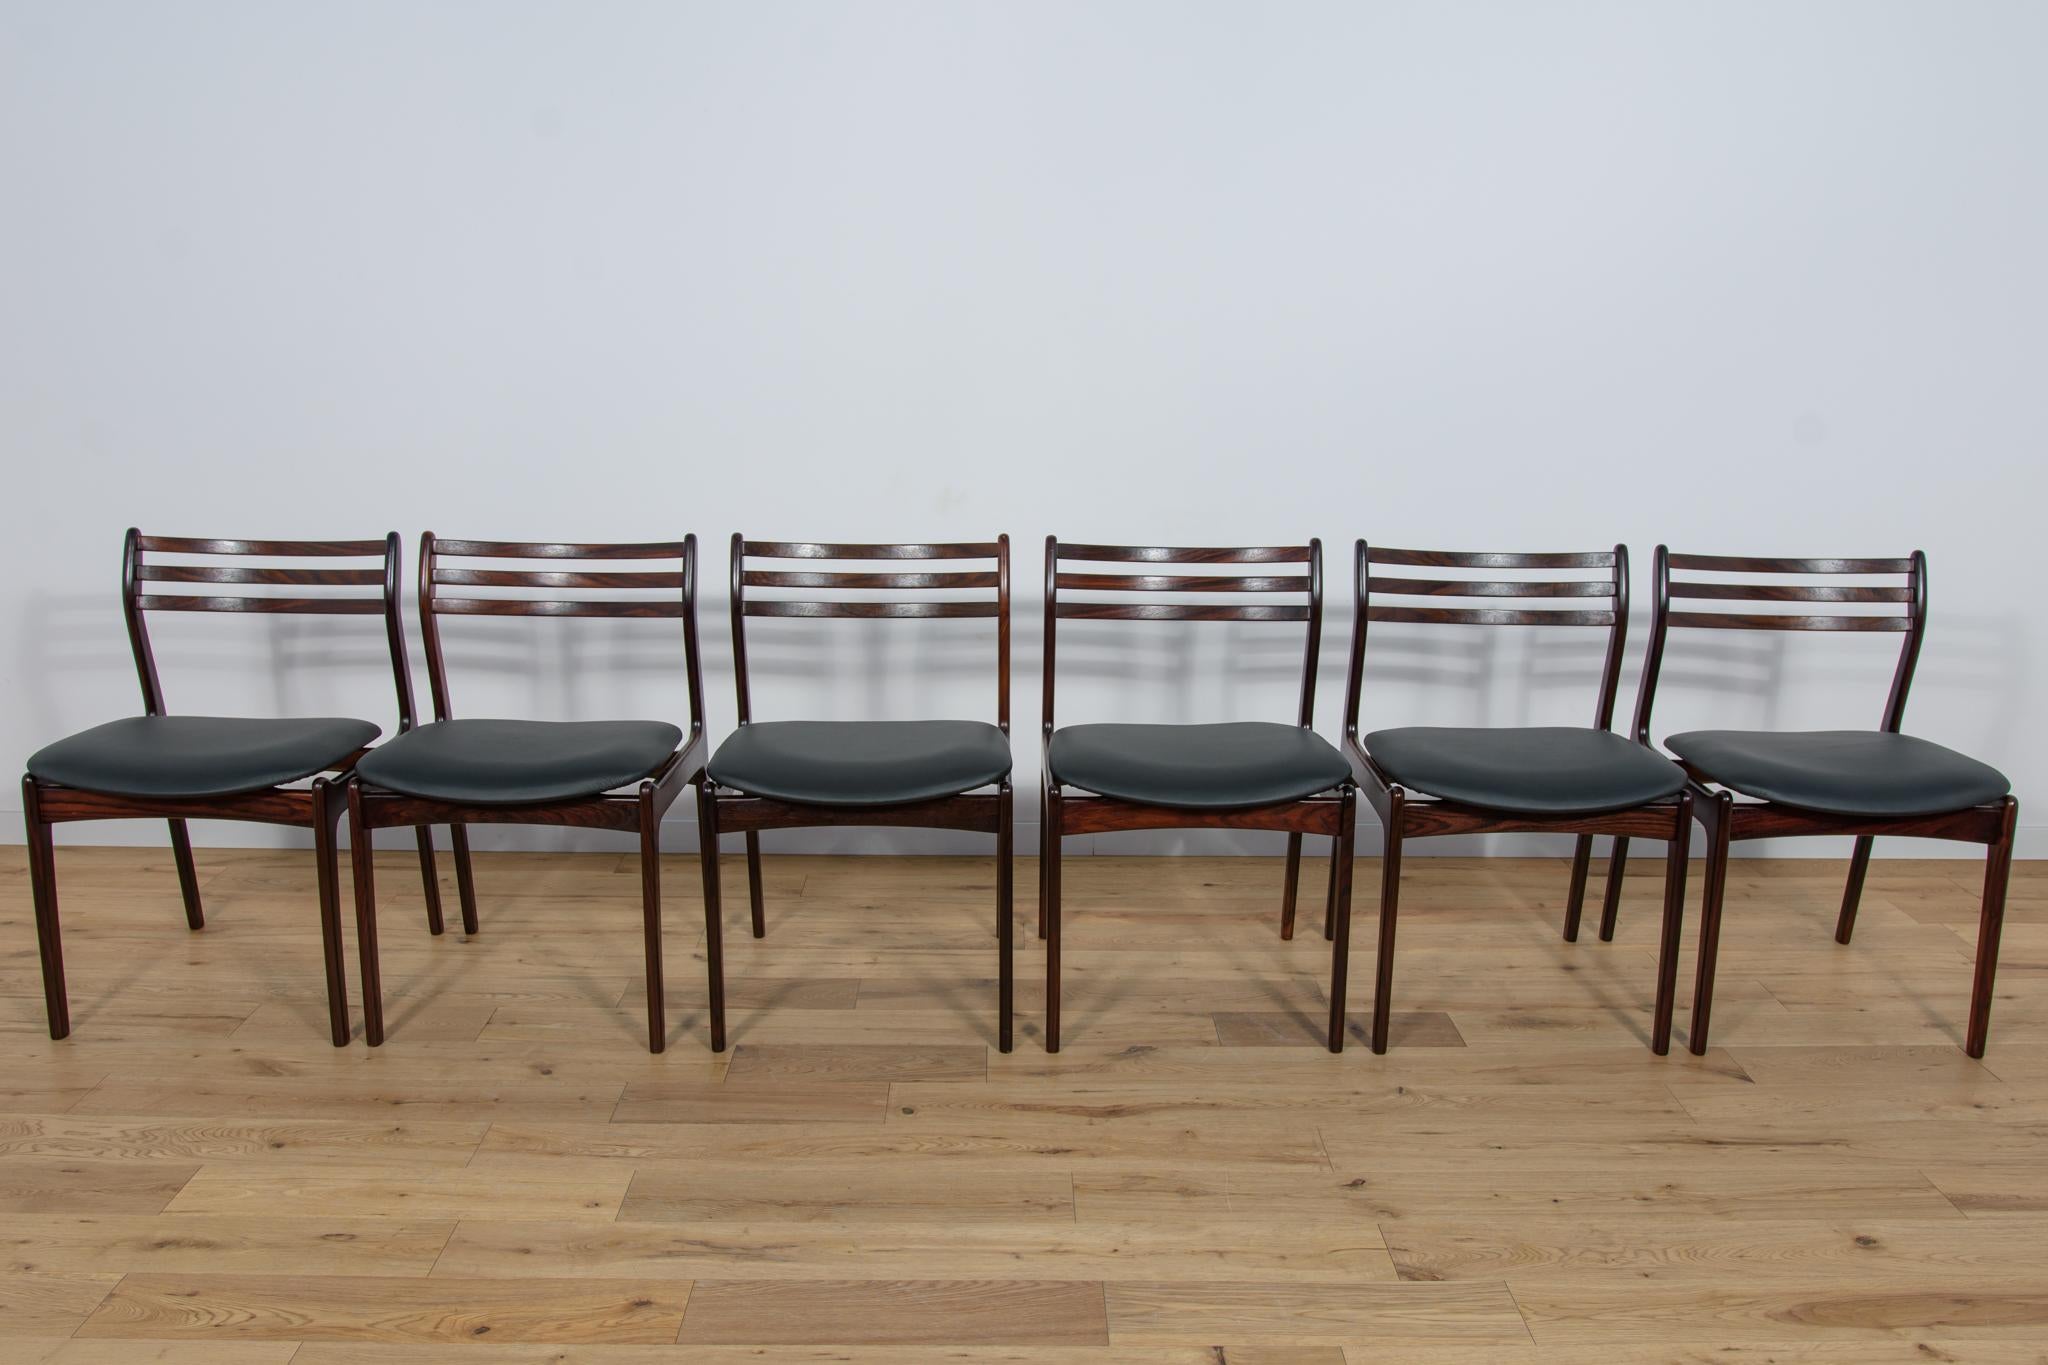 
Ein Satz von sechs Stühlen, entworfen von Vestervig Eriksen für den dänischen Hersteller Brdr. Tromborg in den 1960er Jahren. Stühle mit einer schönen, einzigartigen Form, die von der hohen Kunstfertigkeit in Design und Verarbeitung zeugen, die für